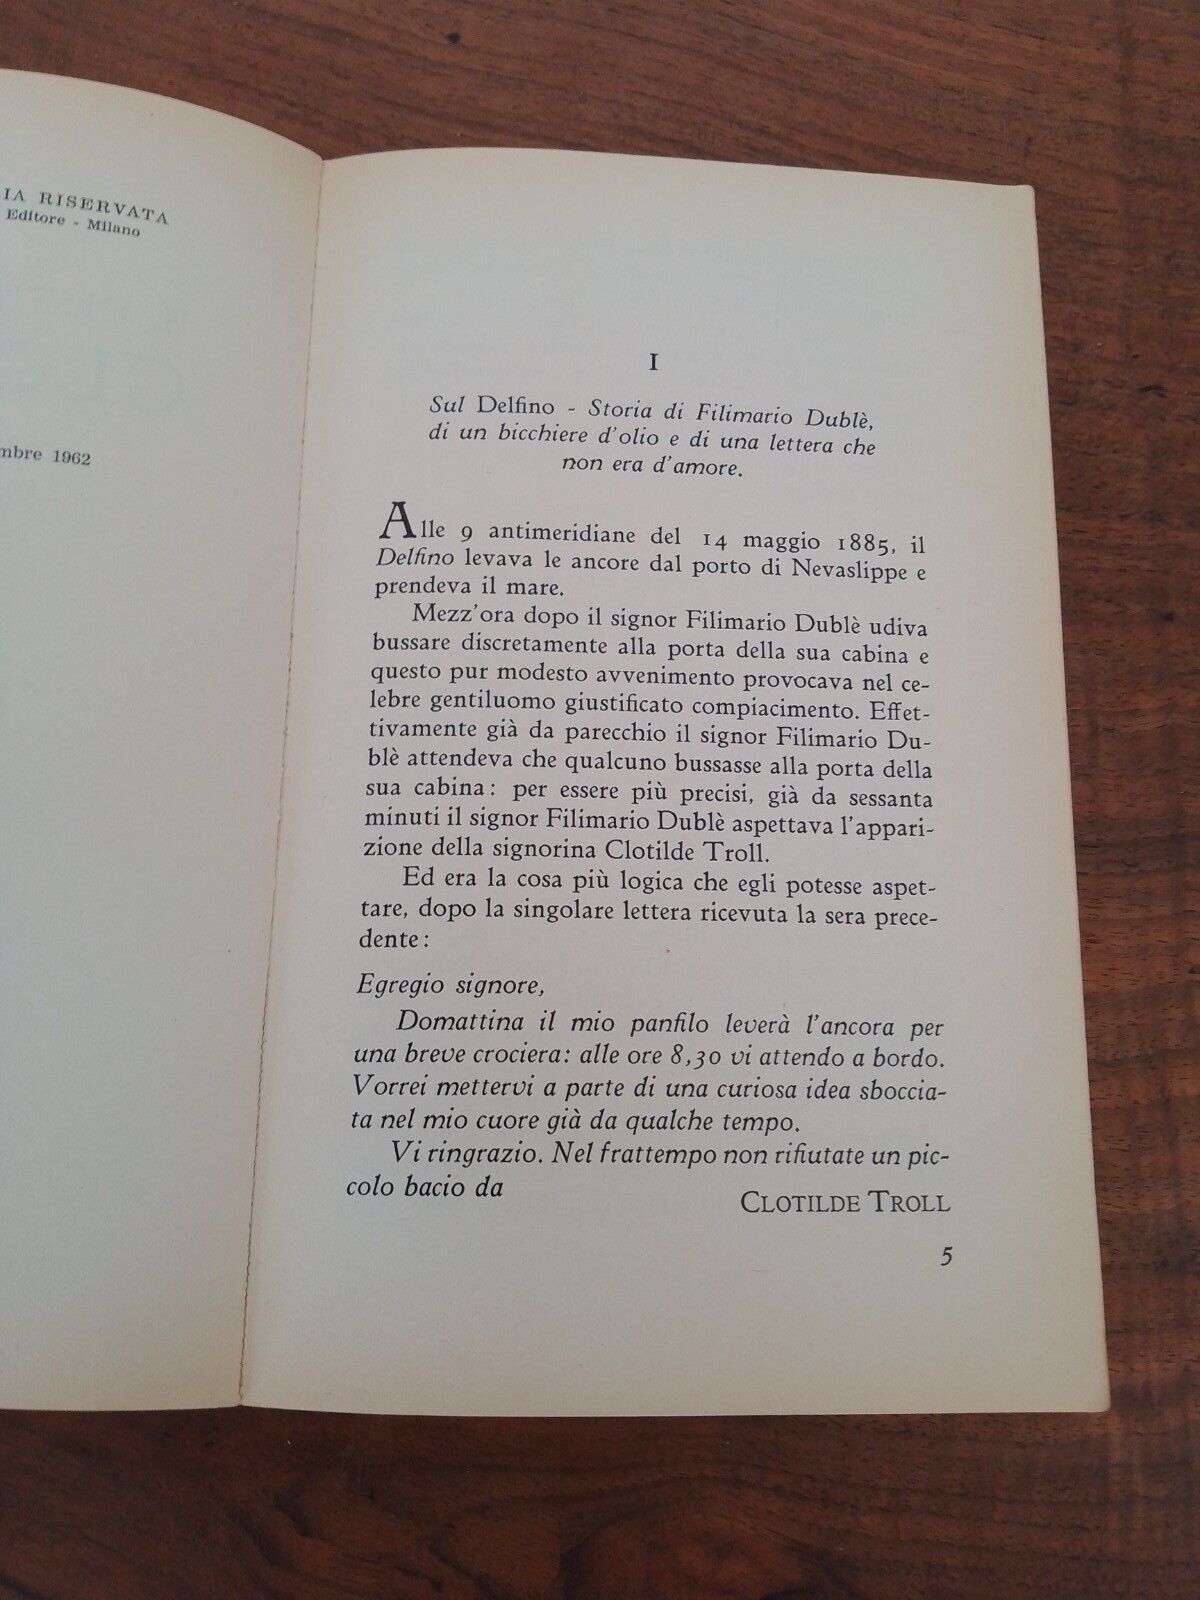 Il destino si chiama Clotilde, Guareschi, Rizzoli 1962